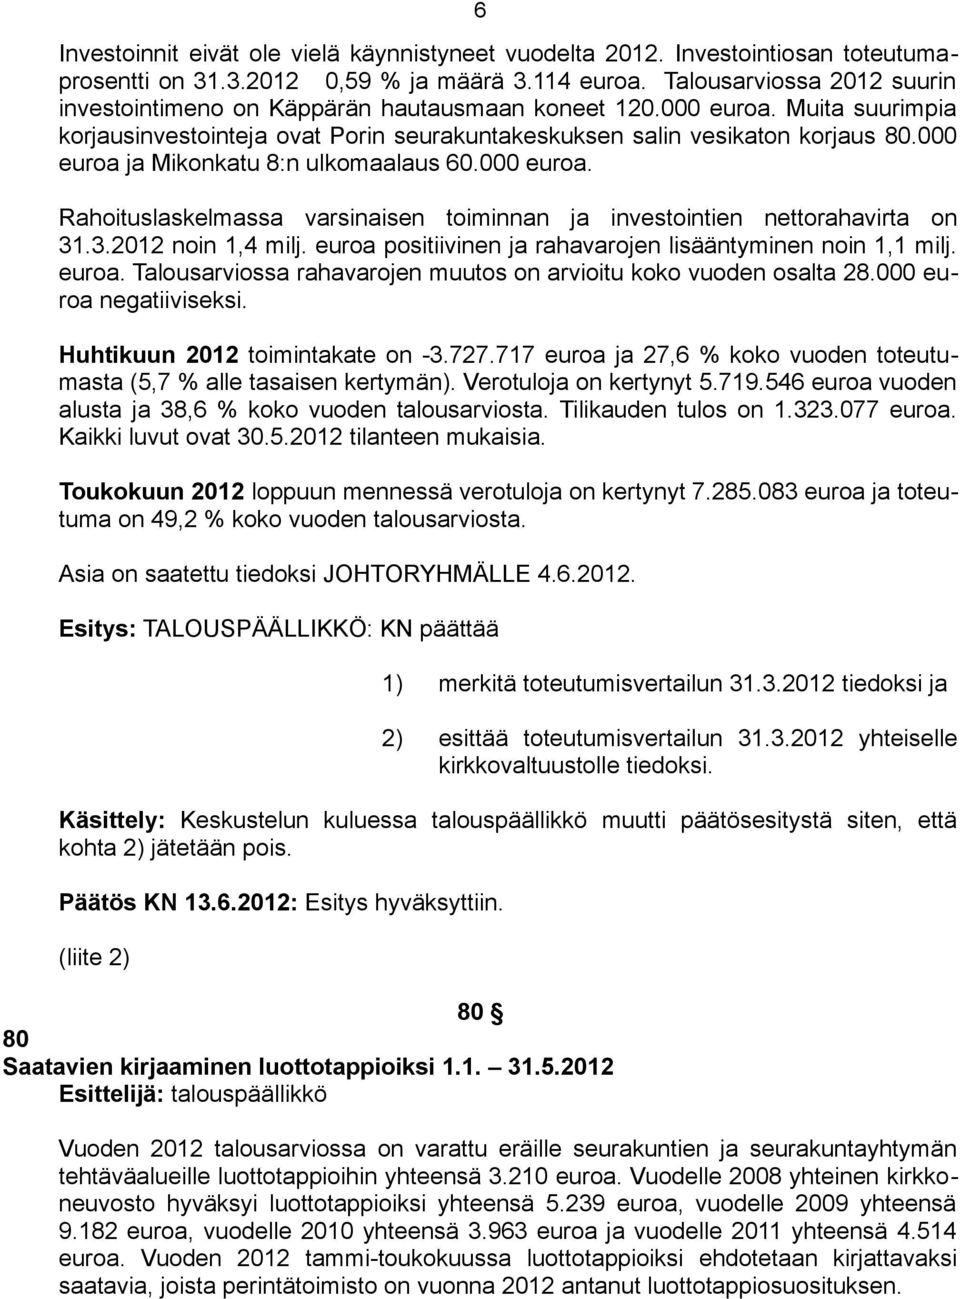 000 euroa ja Mikonkatu 8:n ulkomaalaus 60.000 euroa. Rahoituslaskelmassa varsinaisen toiminnan ja investointien nettorahavirta on 31.3.2012 noin 1,4 milj.